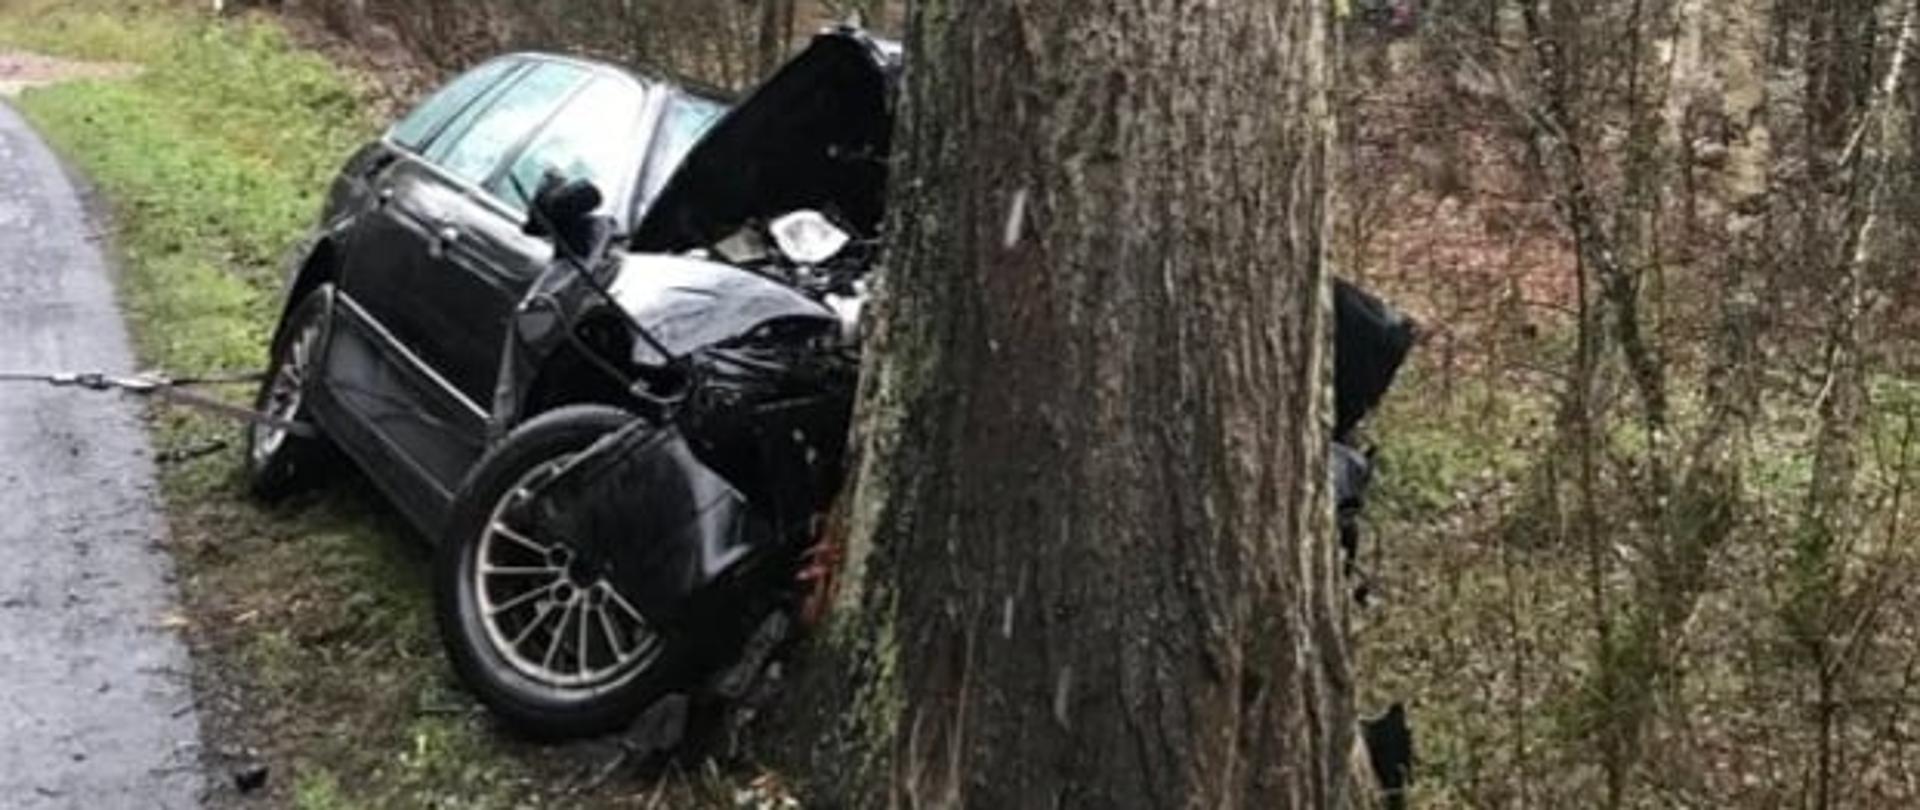 Zdjęcie przedstawia rozbity samochód osobowy marki BMW.